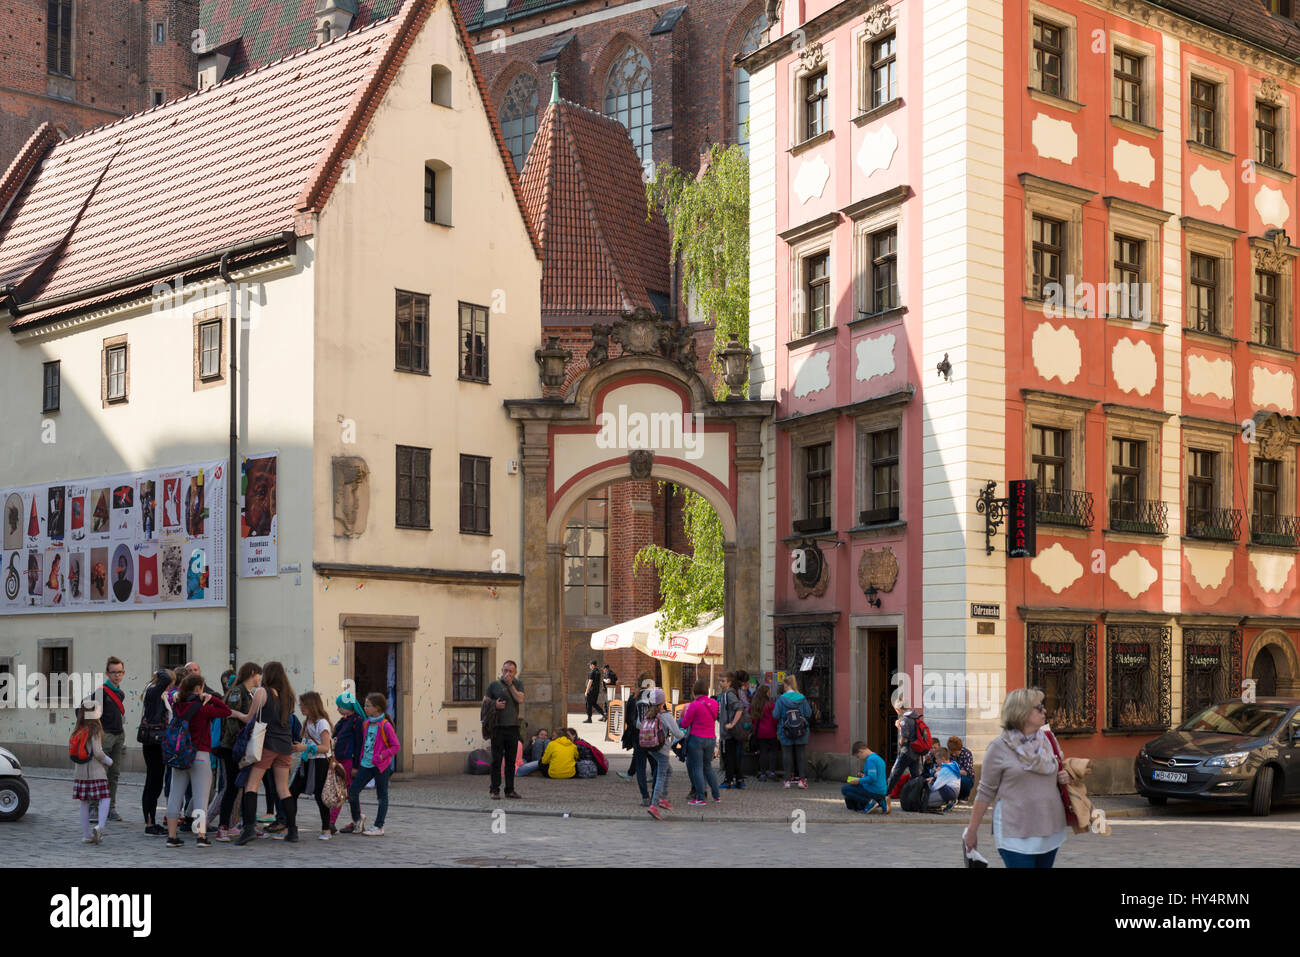 Polonia, Wroclaw, Rynek, dos minúsculos AltaristenhÃ¤user "Hansel y Gretel", arco de entrada, los turistas Foto de stock